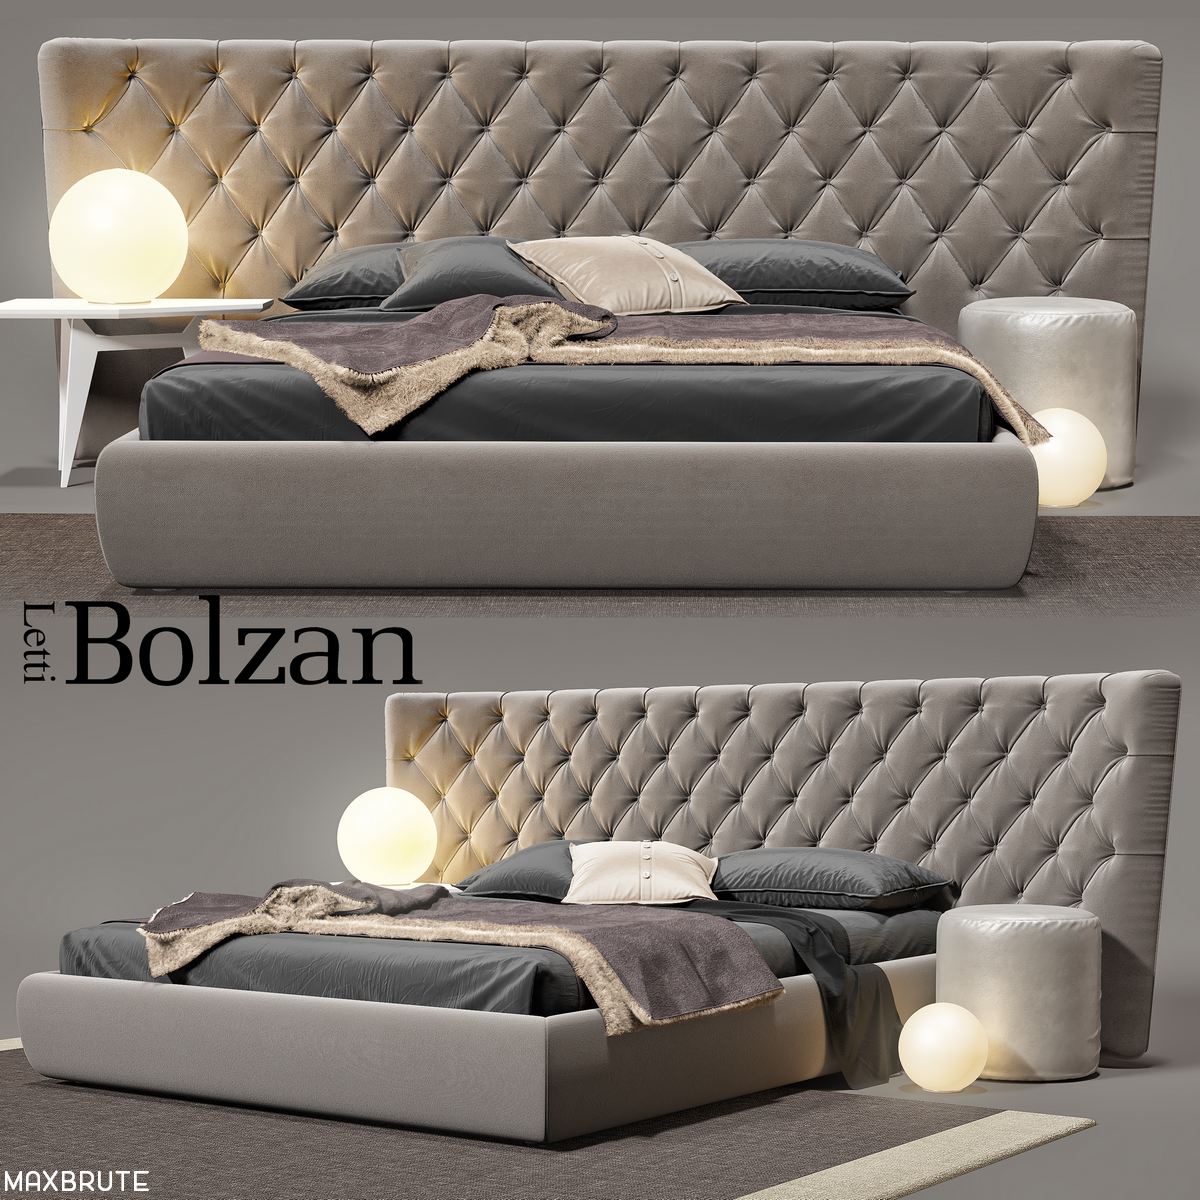 3dSkyHost: Bolzan Selene large bed 3dmodel